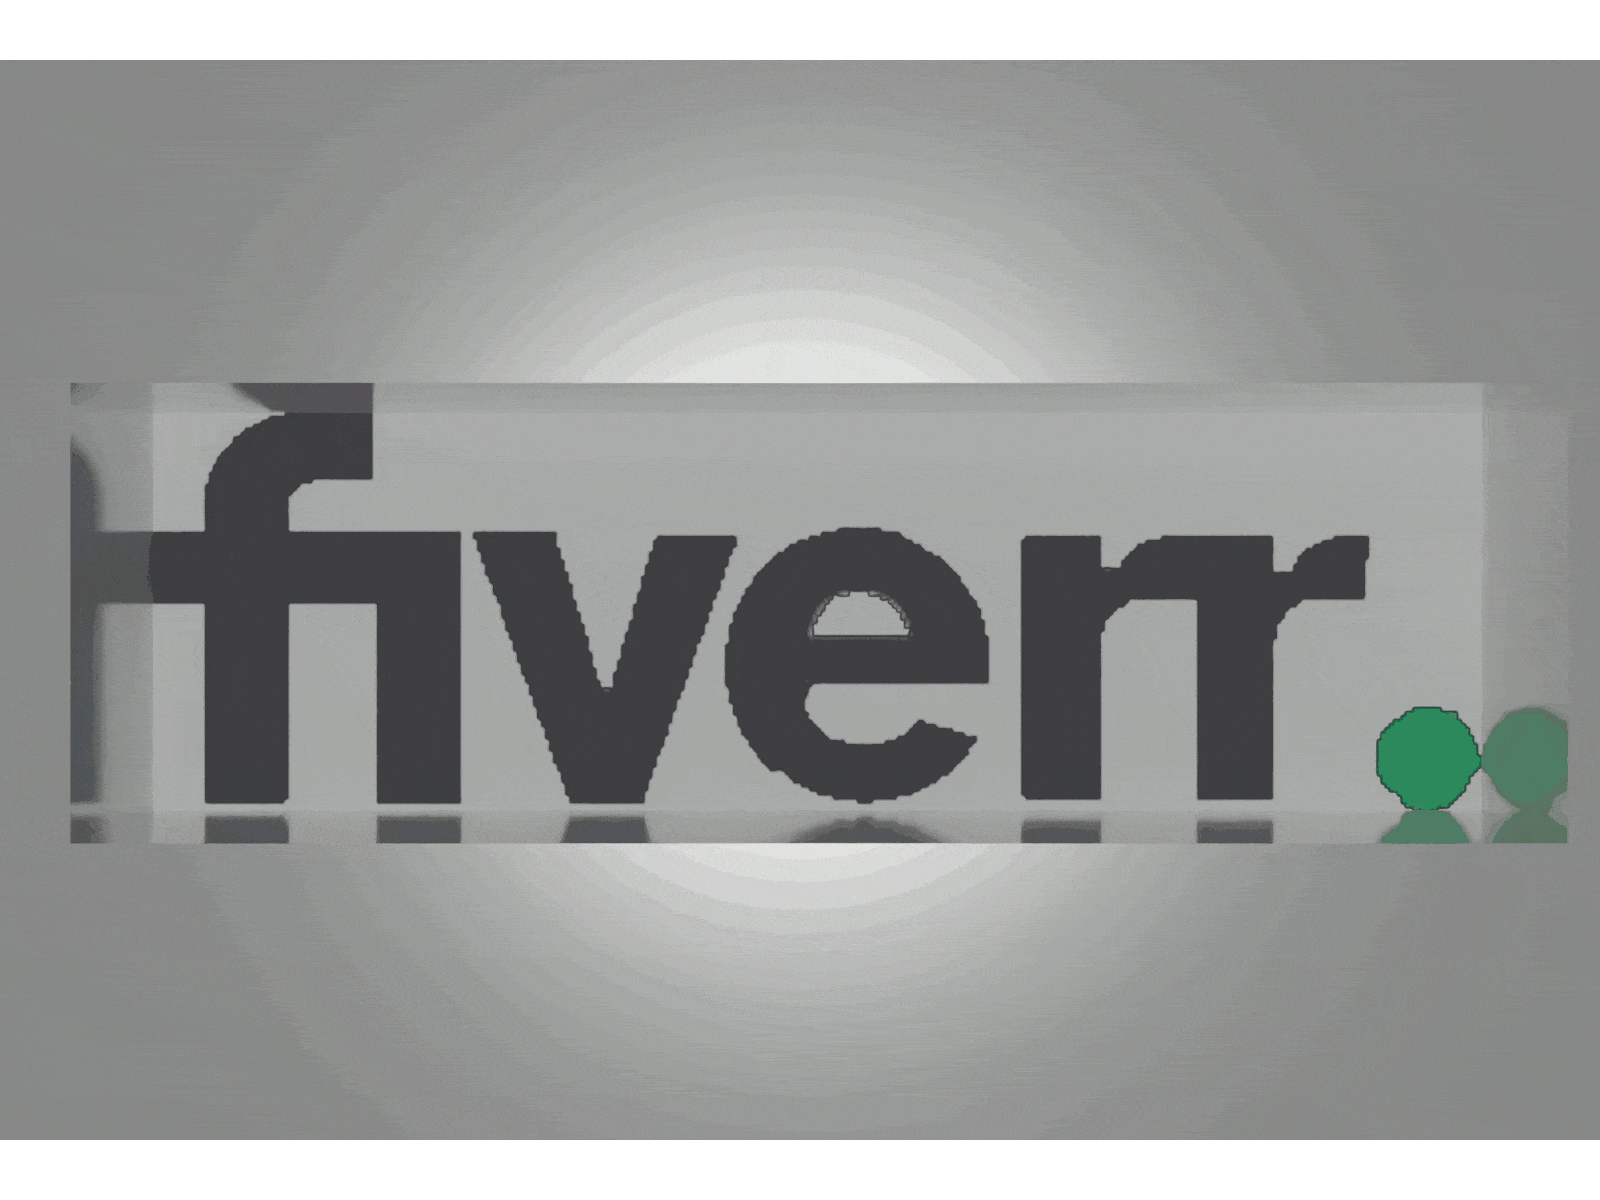 Fiverr logo transformation